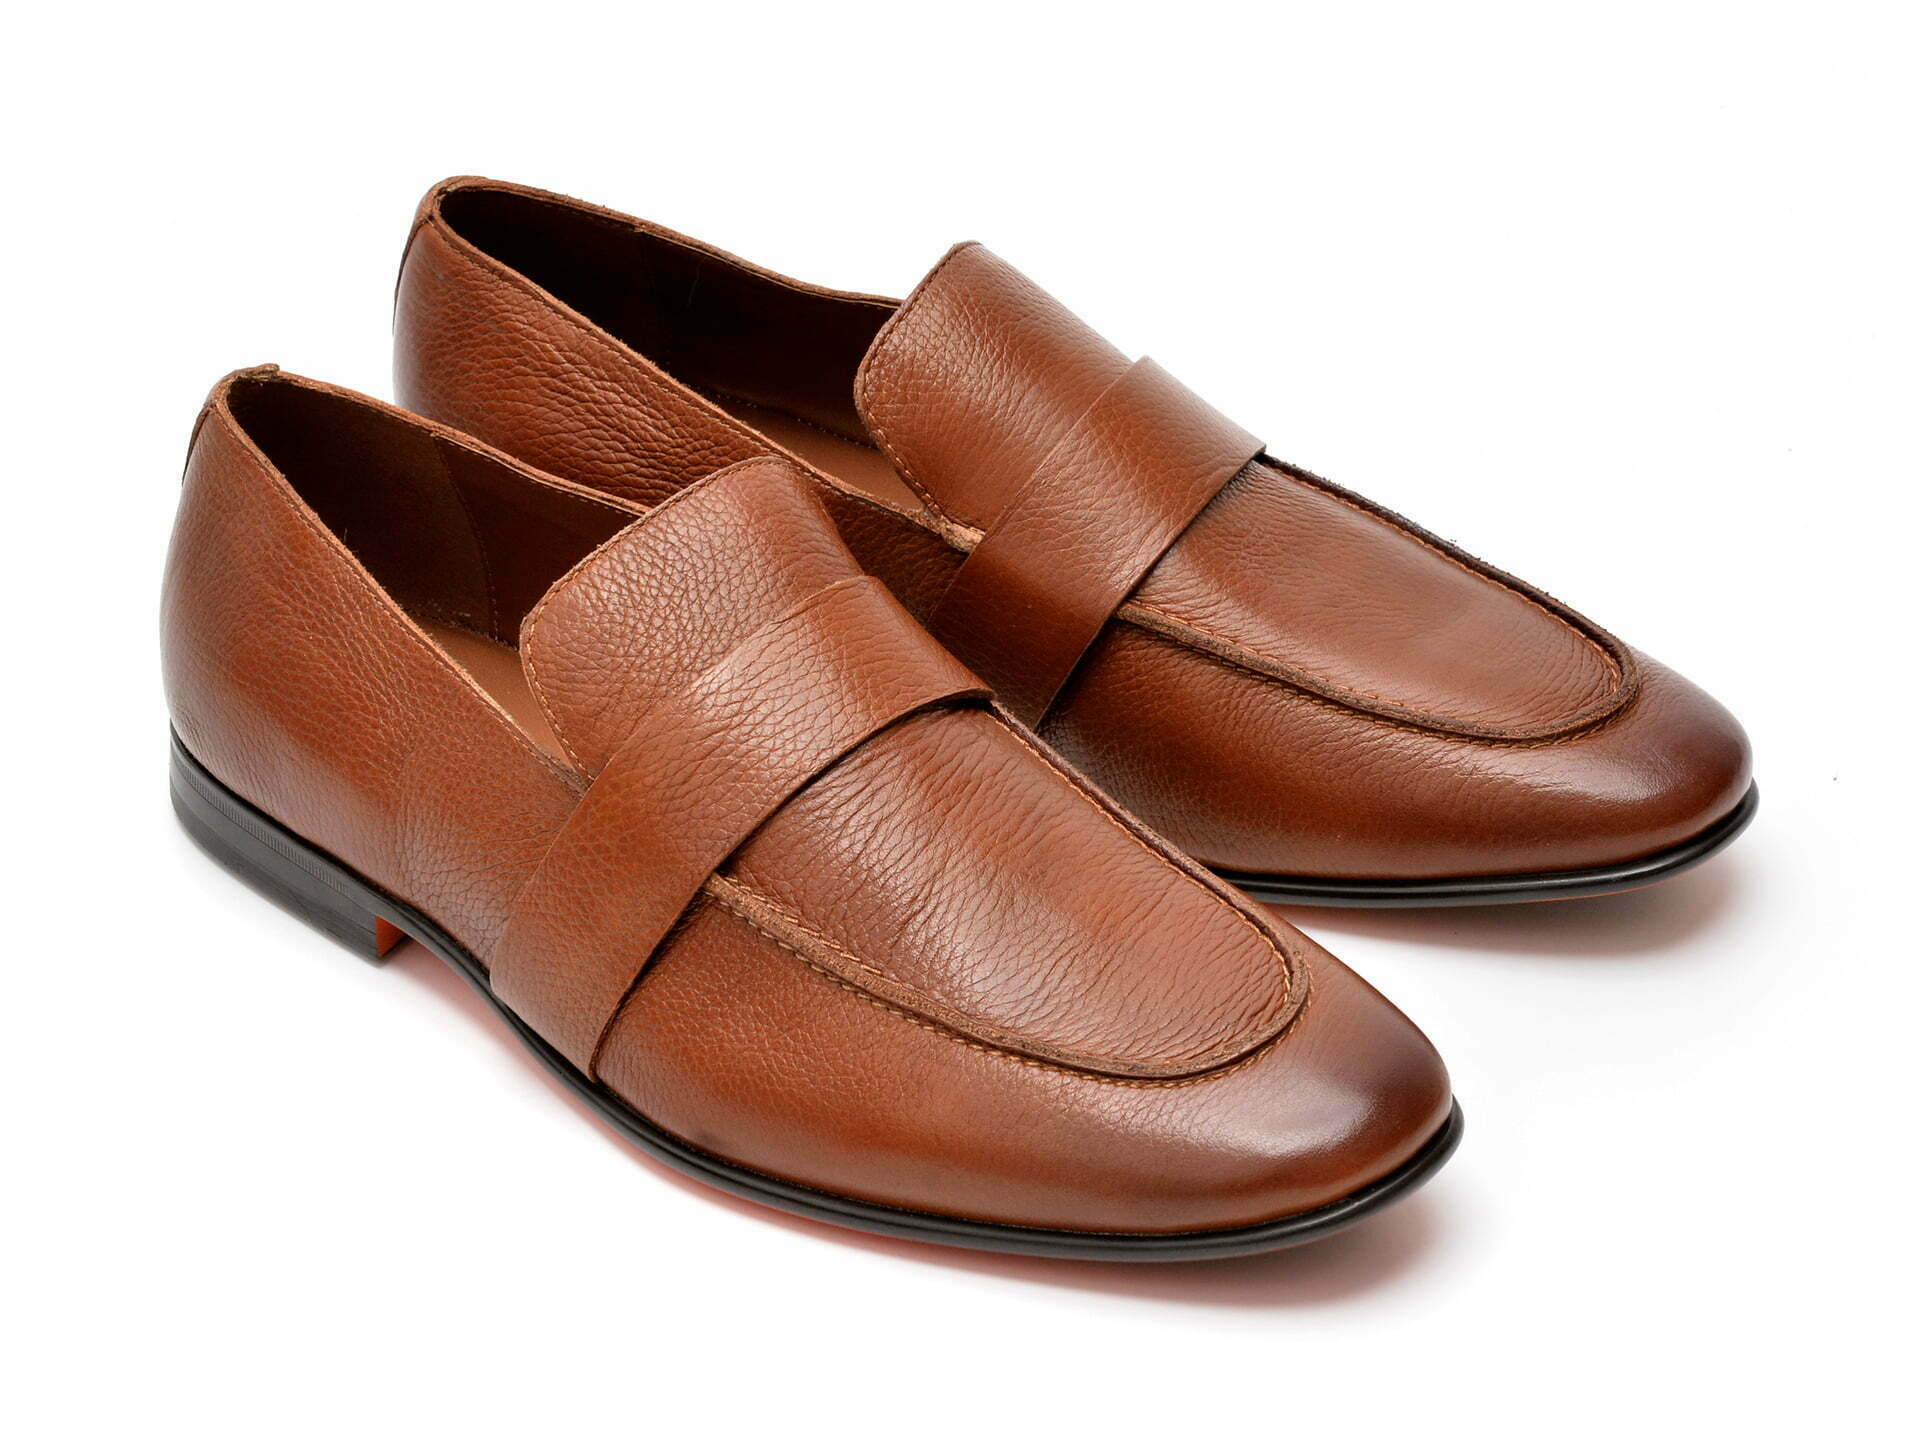 Comandă Încălțăminte Damă, la Reducere  Pantofi ALDO maro, BARDOW220, din piele naturala Branduri de top ✓